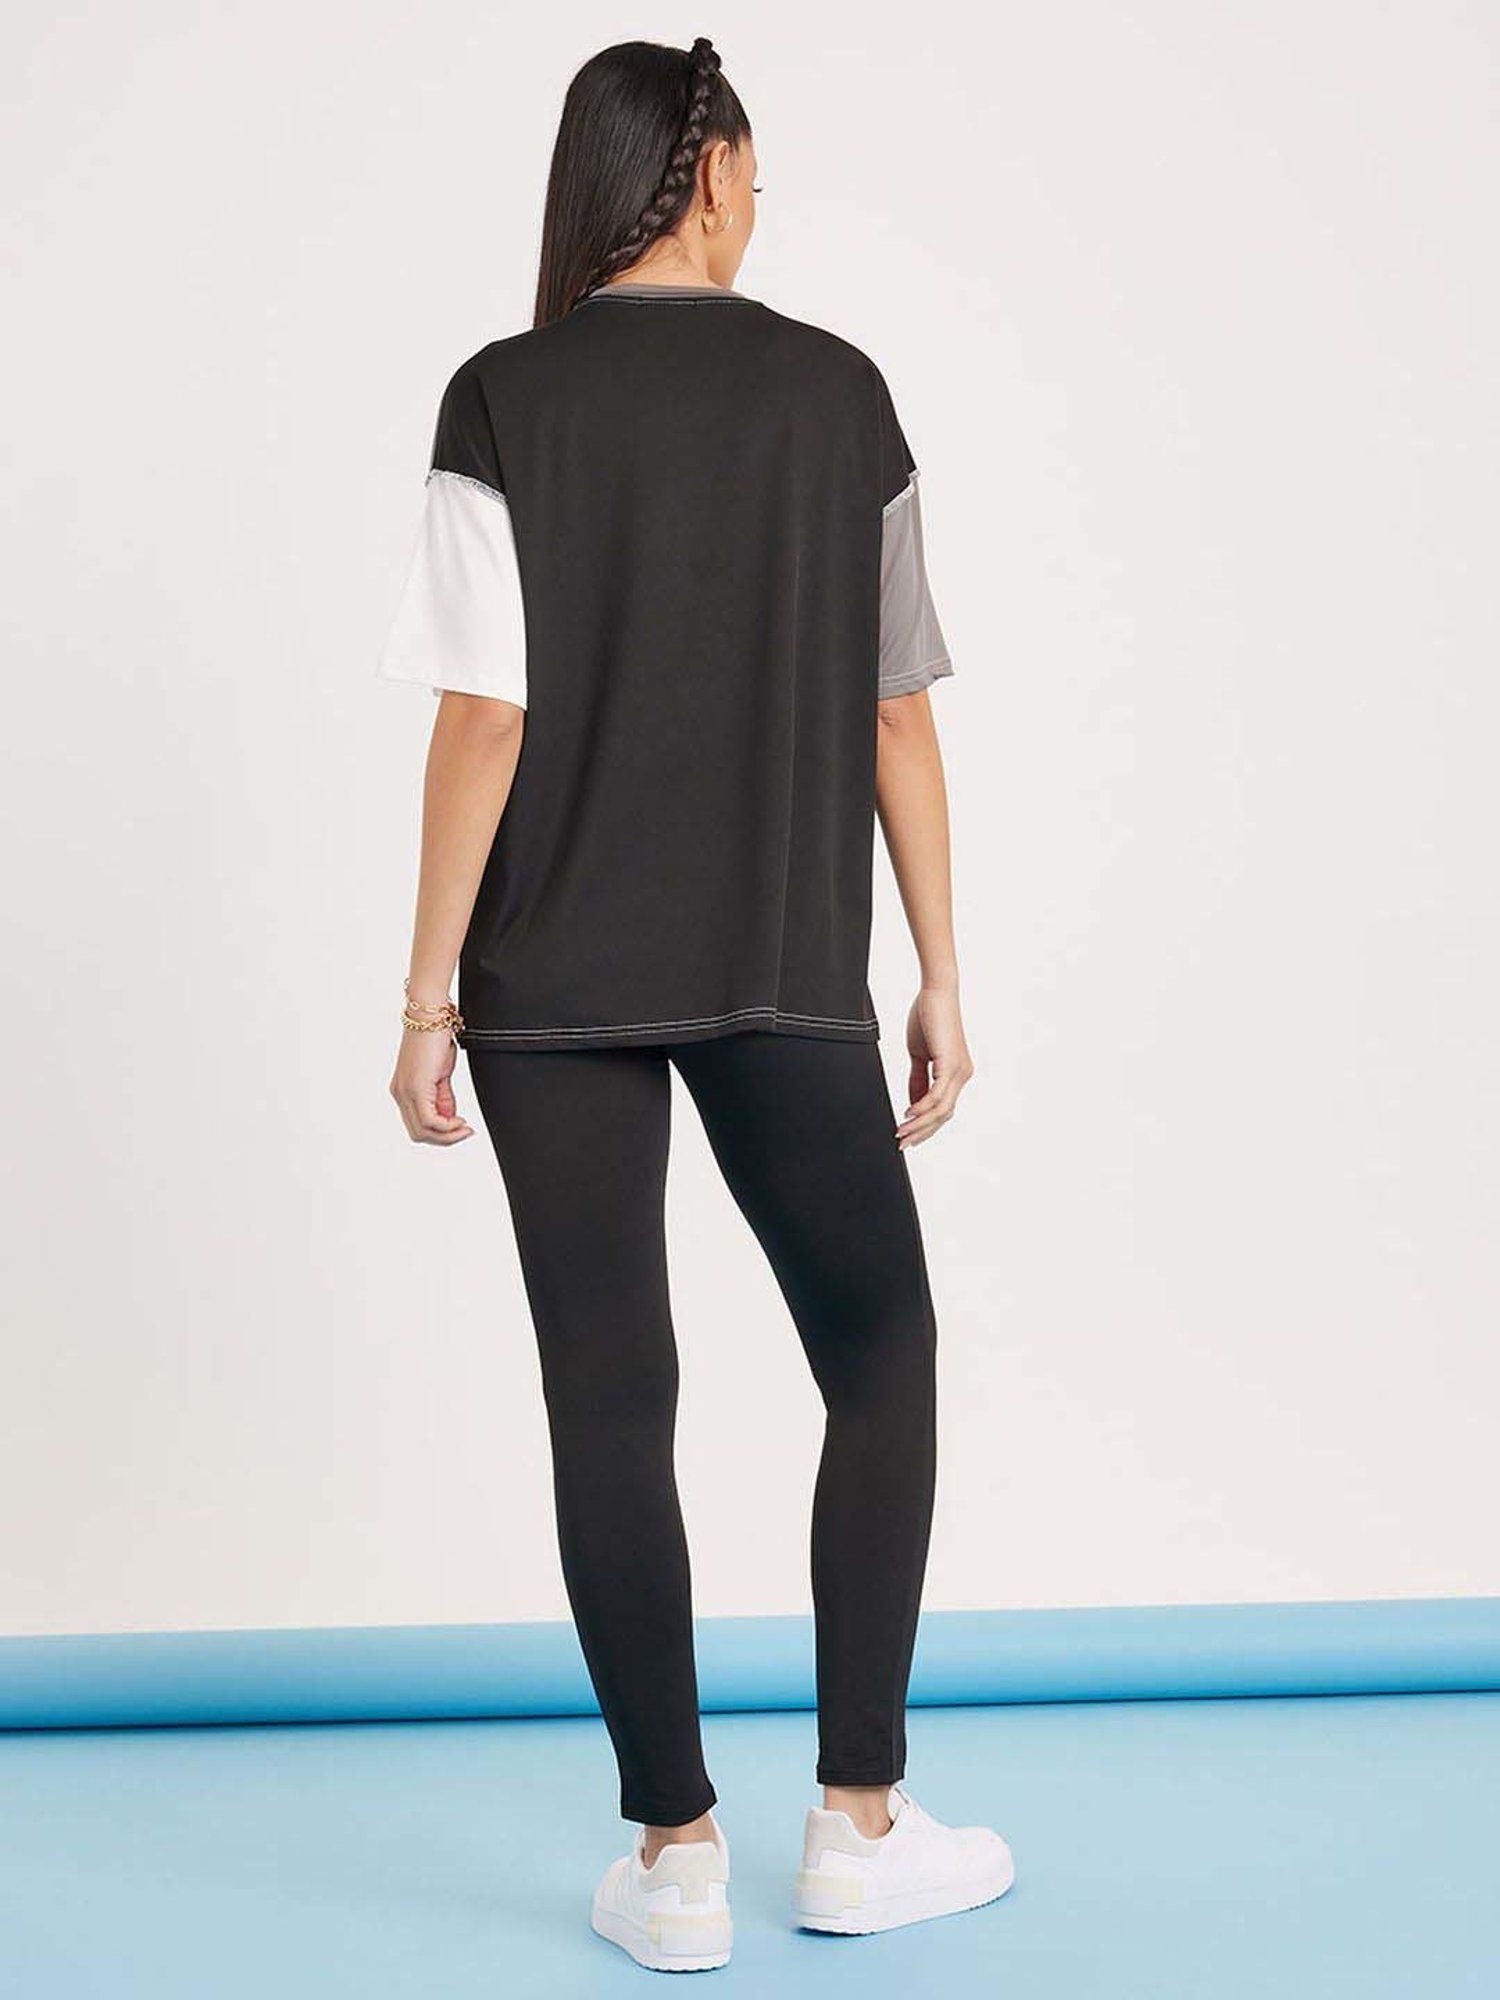 Styli Black Color-Block Sports T-Shirt Leggings Set